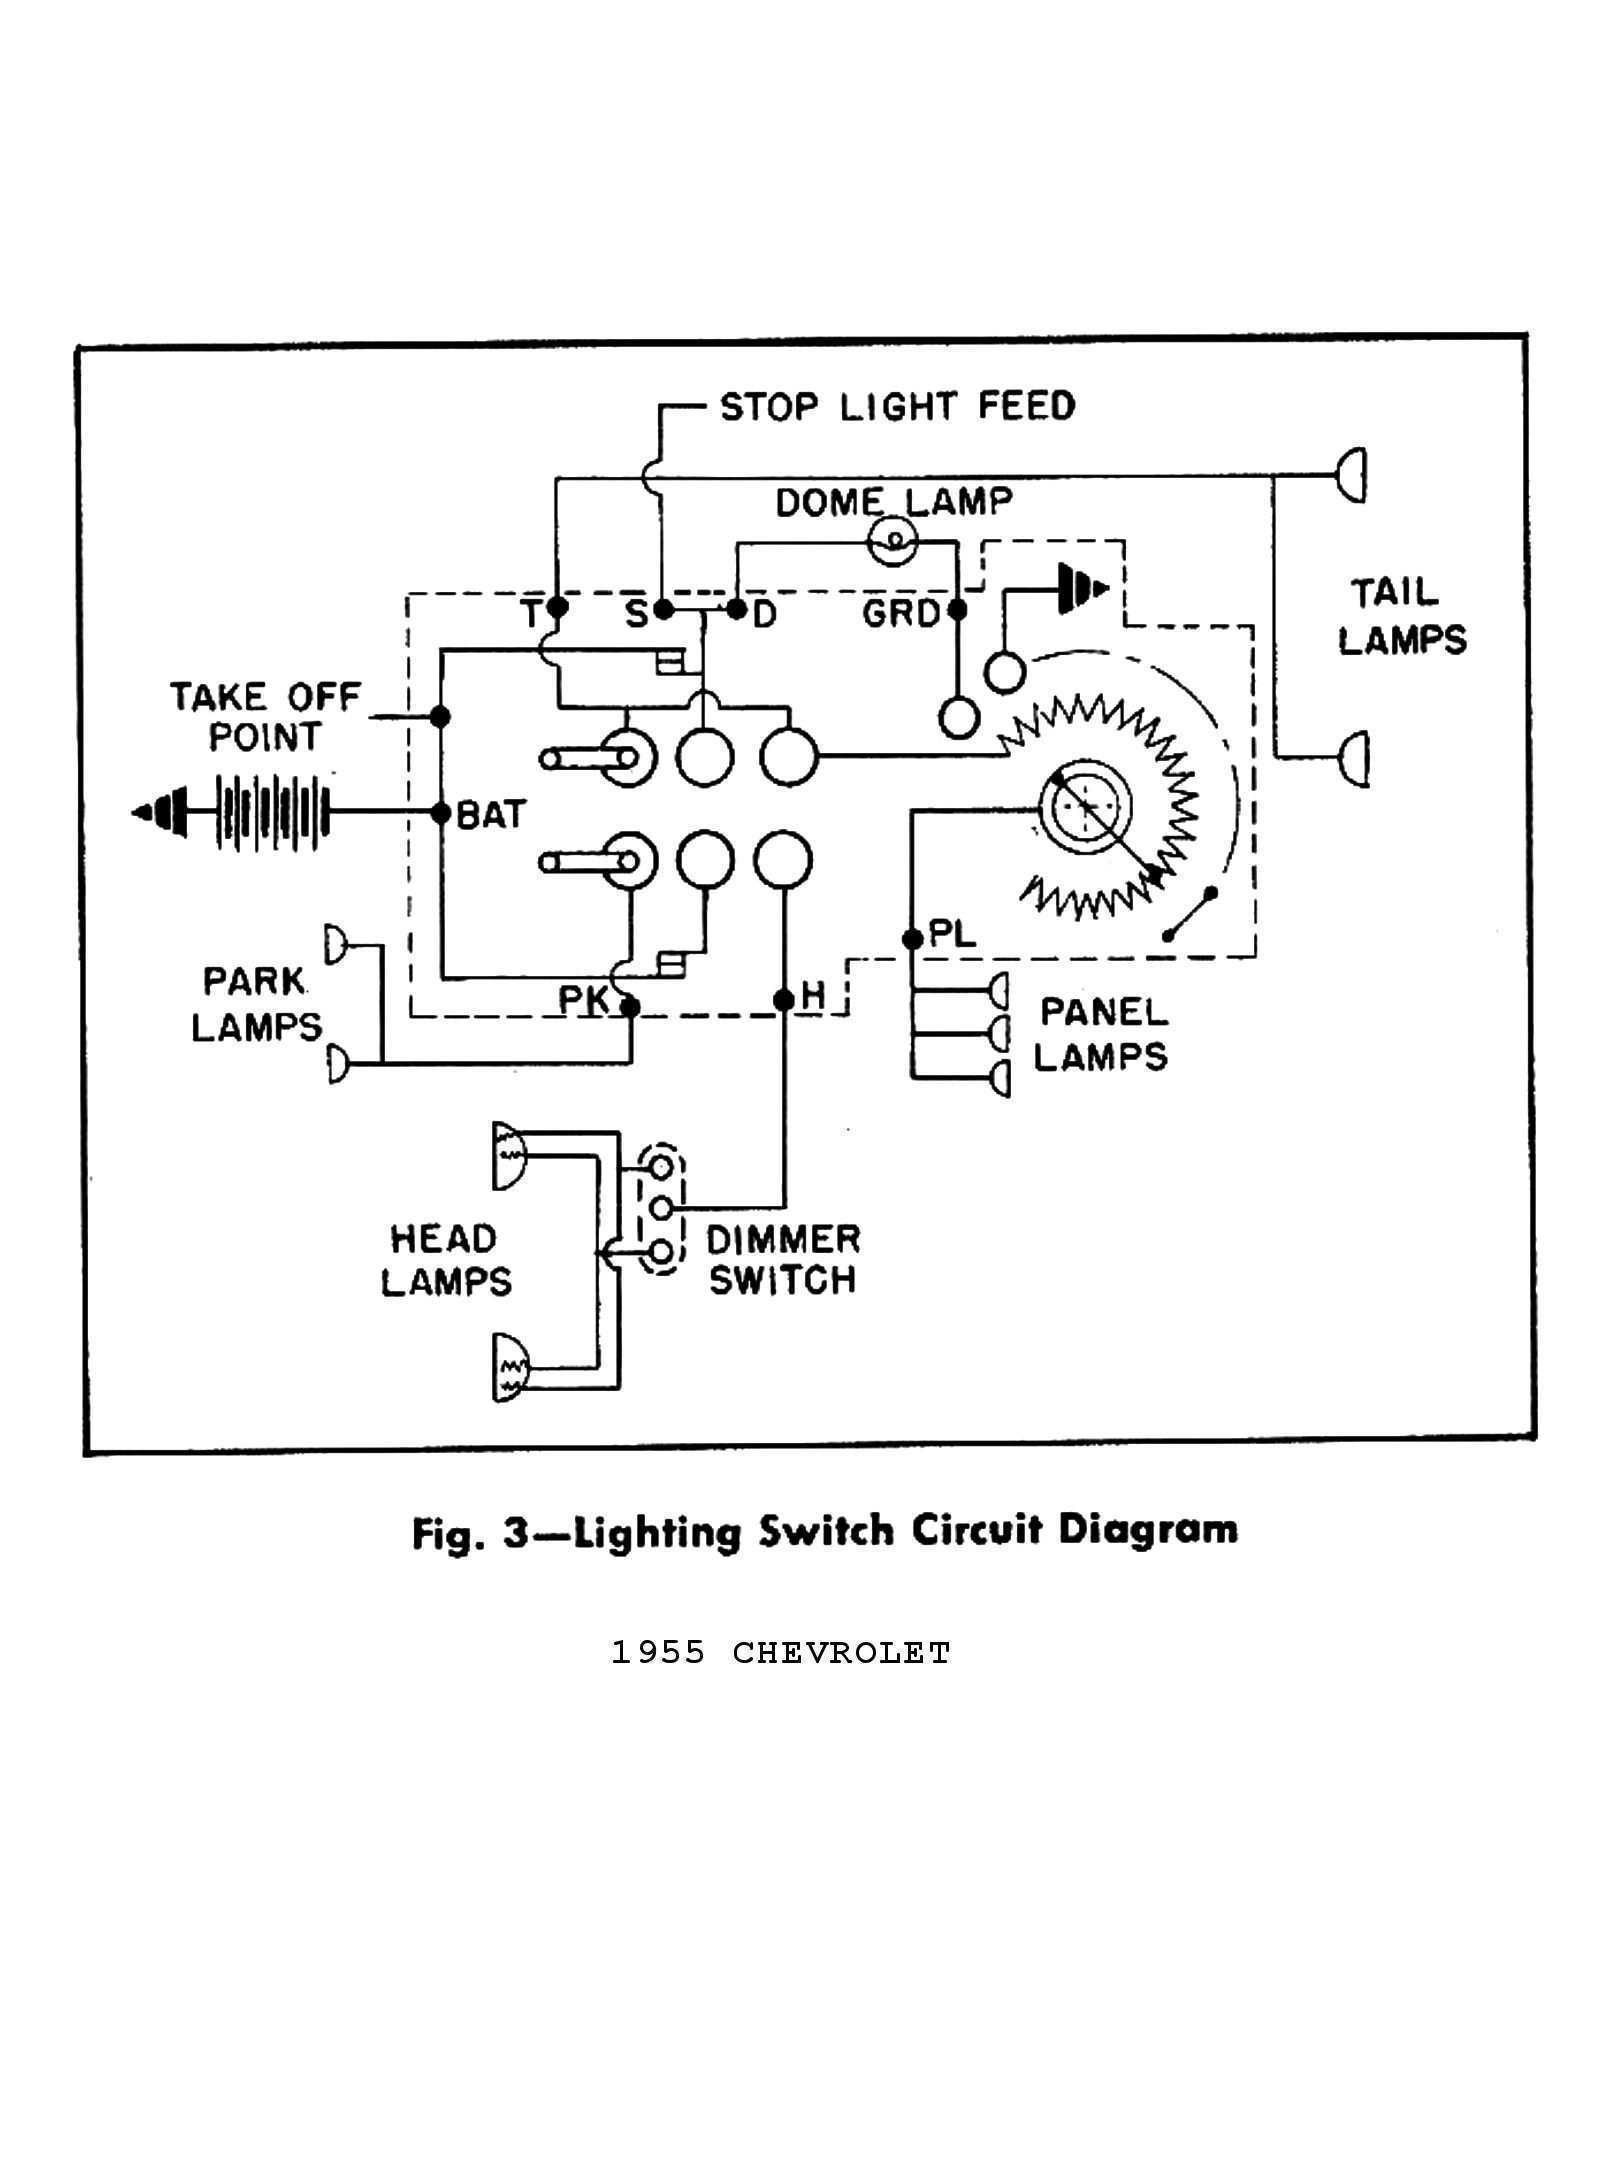 Truck Lite Wiring Diagram Chevy Truck Headlight Switch Wiring Diagram Free Picture Wiring Of Truck Lite Wiring Diagram